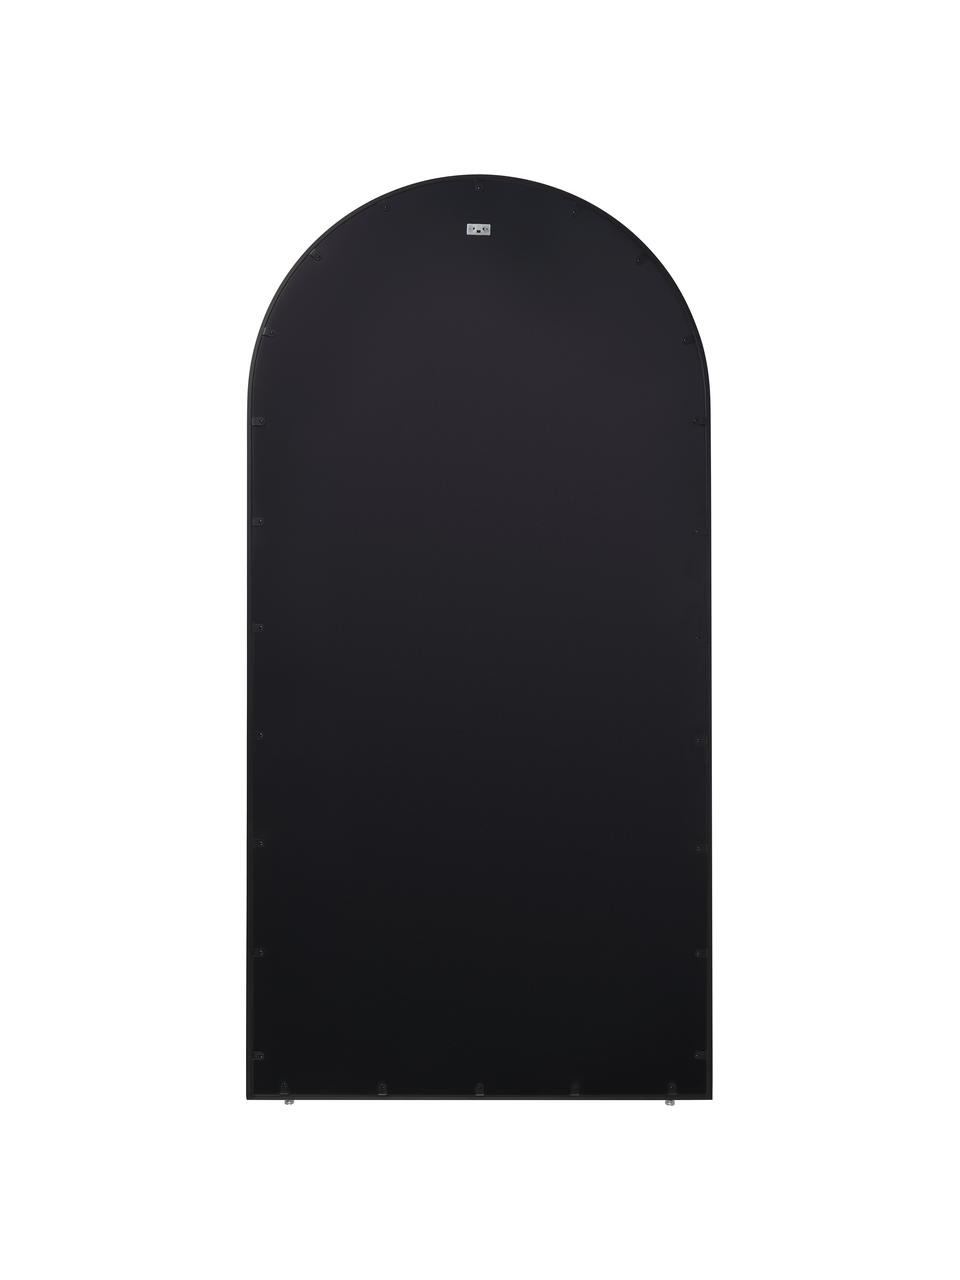 Lustro stojące z metalową ramą Clarita, Czarny, S 90 x W 180 cm